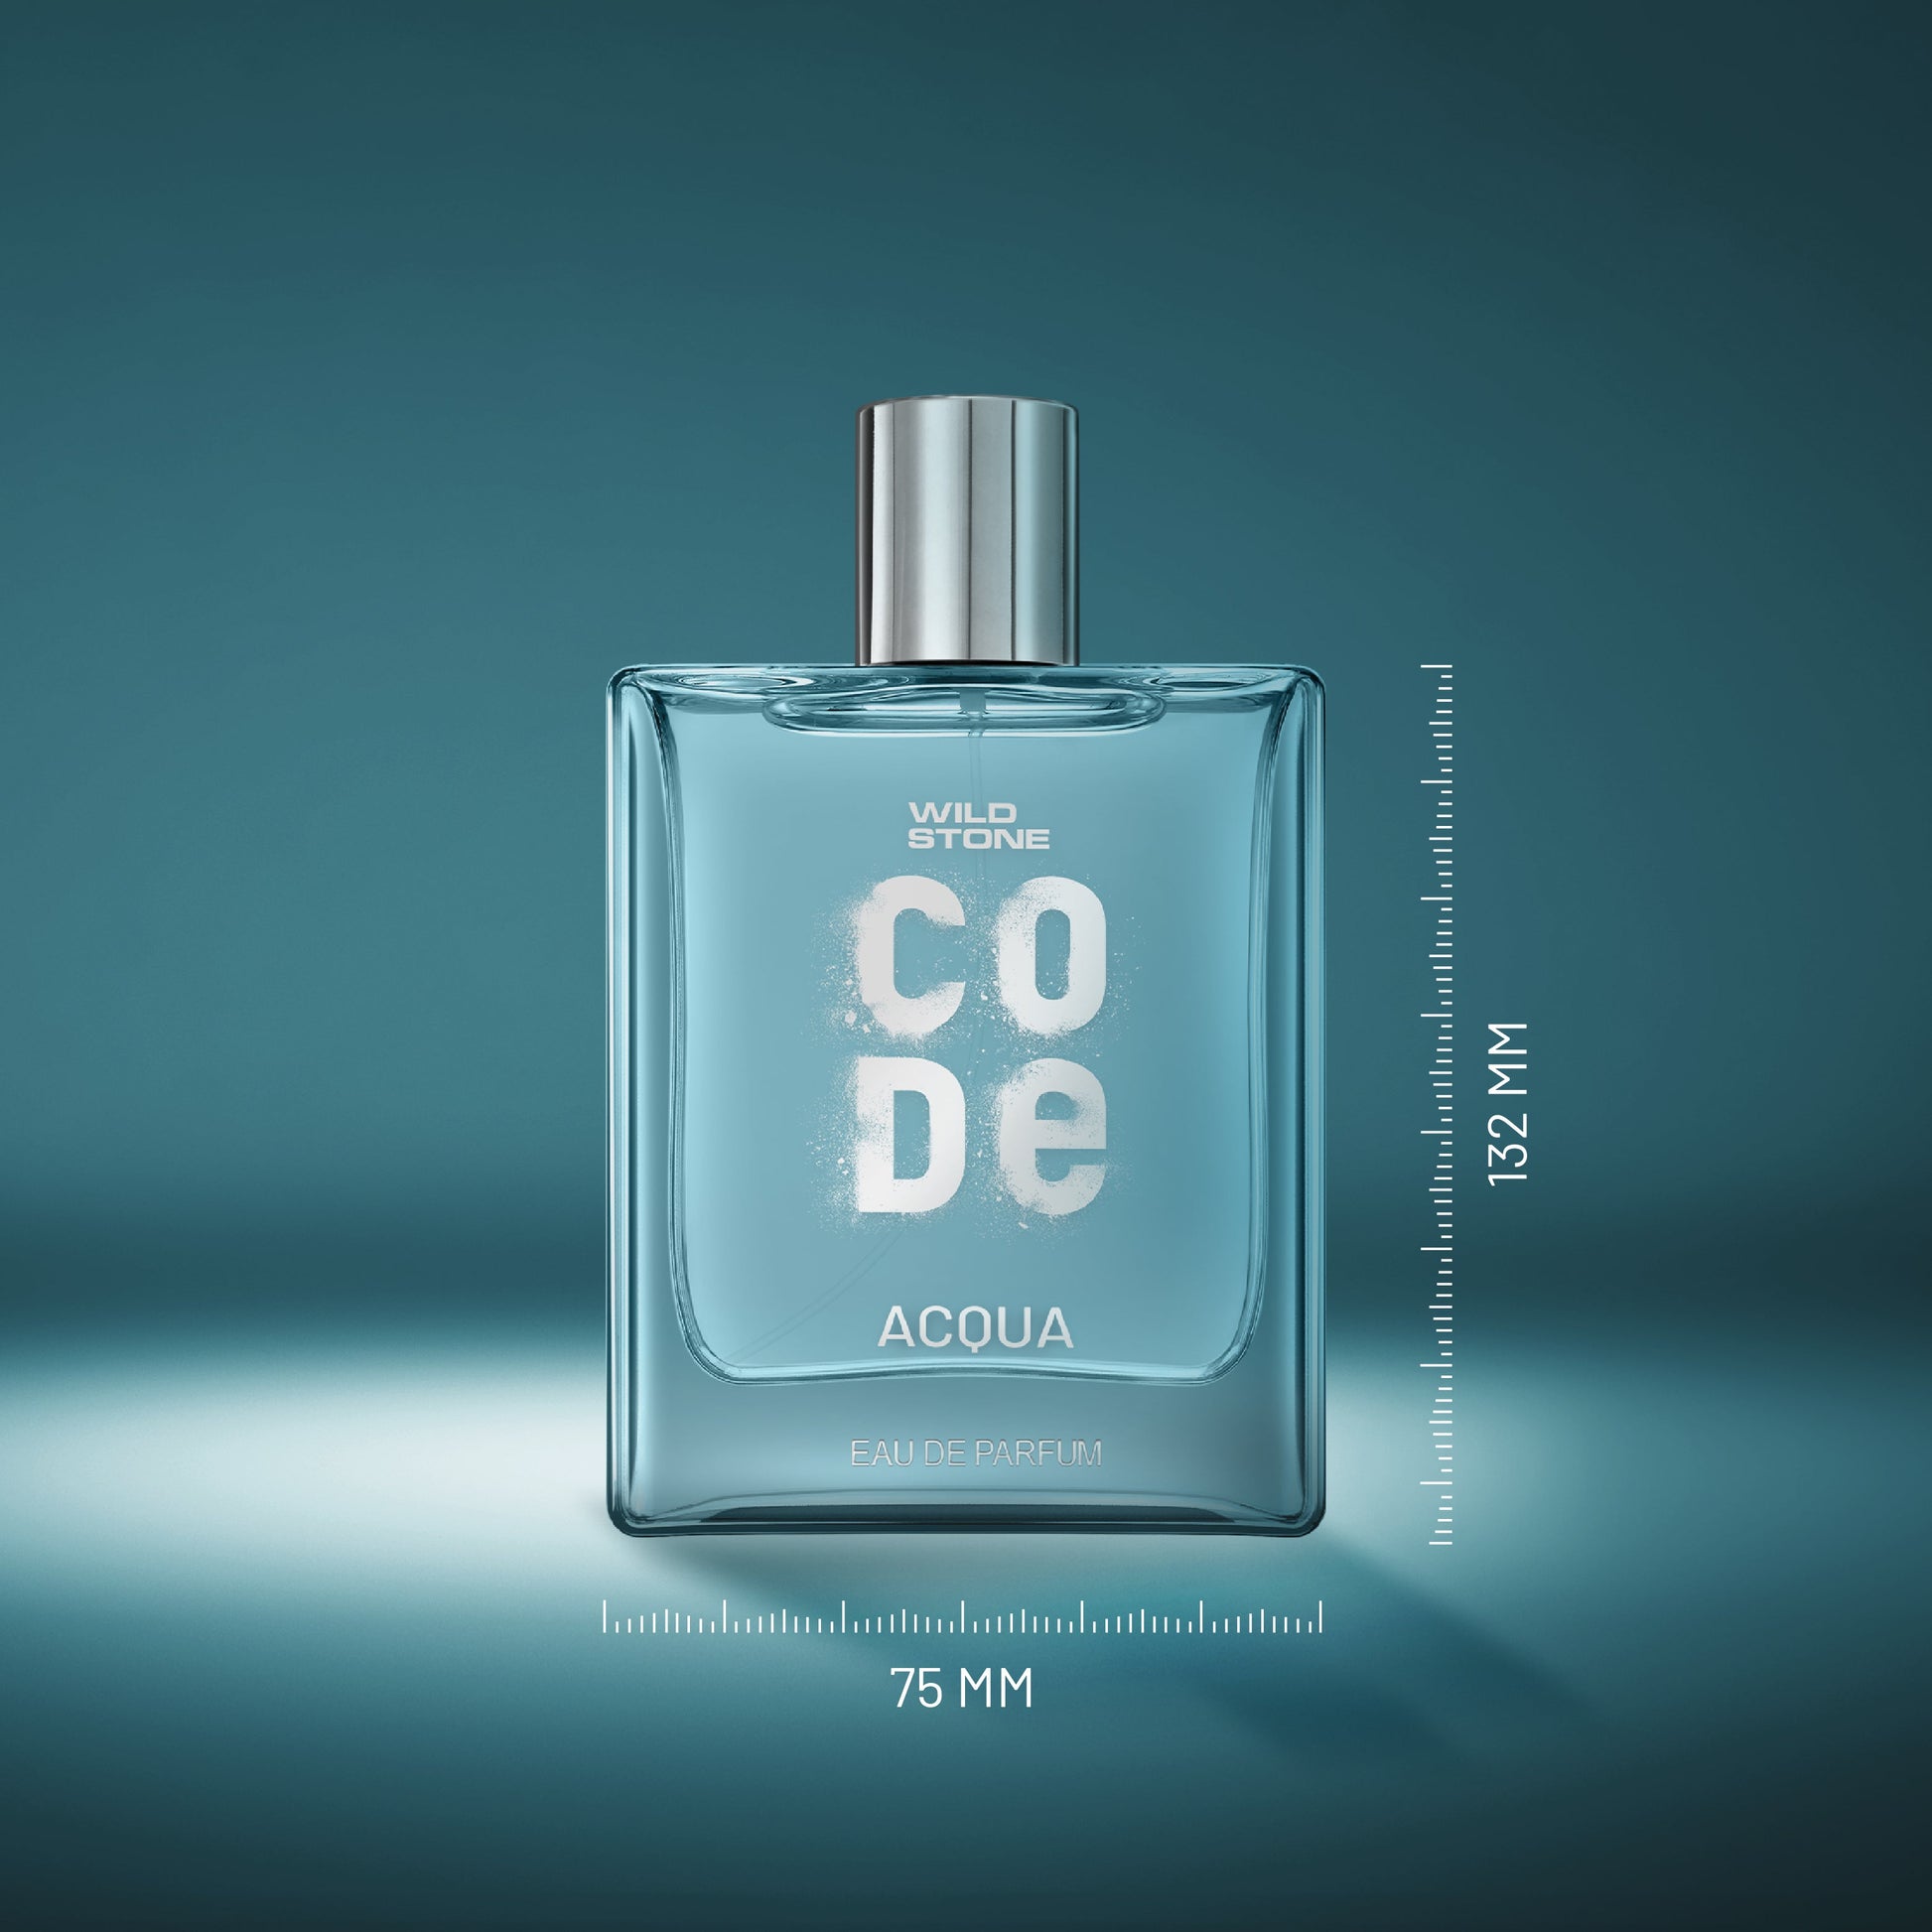 Wild stone Code Acqua Perfume dimensions